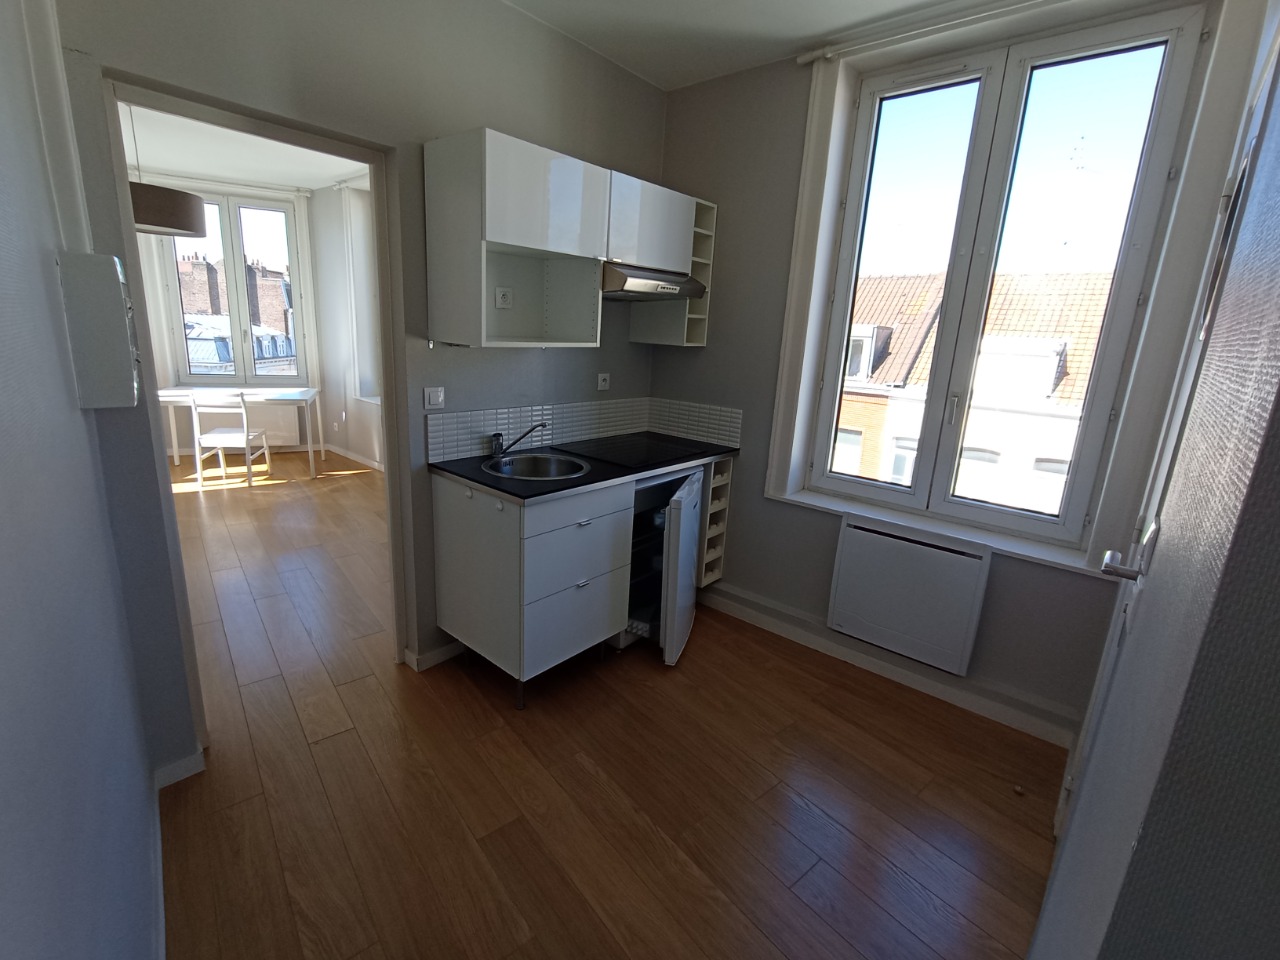 Location appartement 59000 Lille - Appartement T1 de 25 m2 prêt meuble